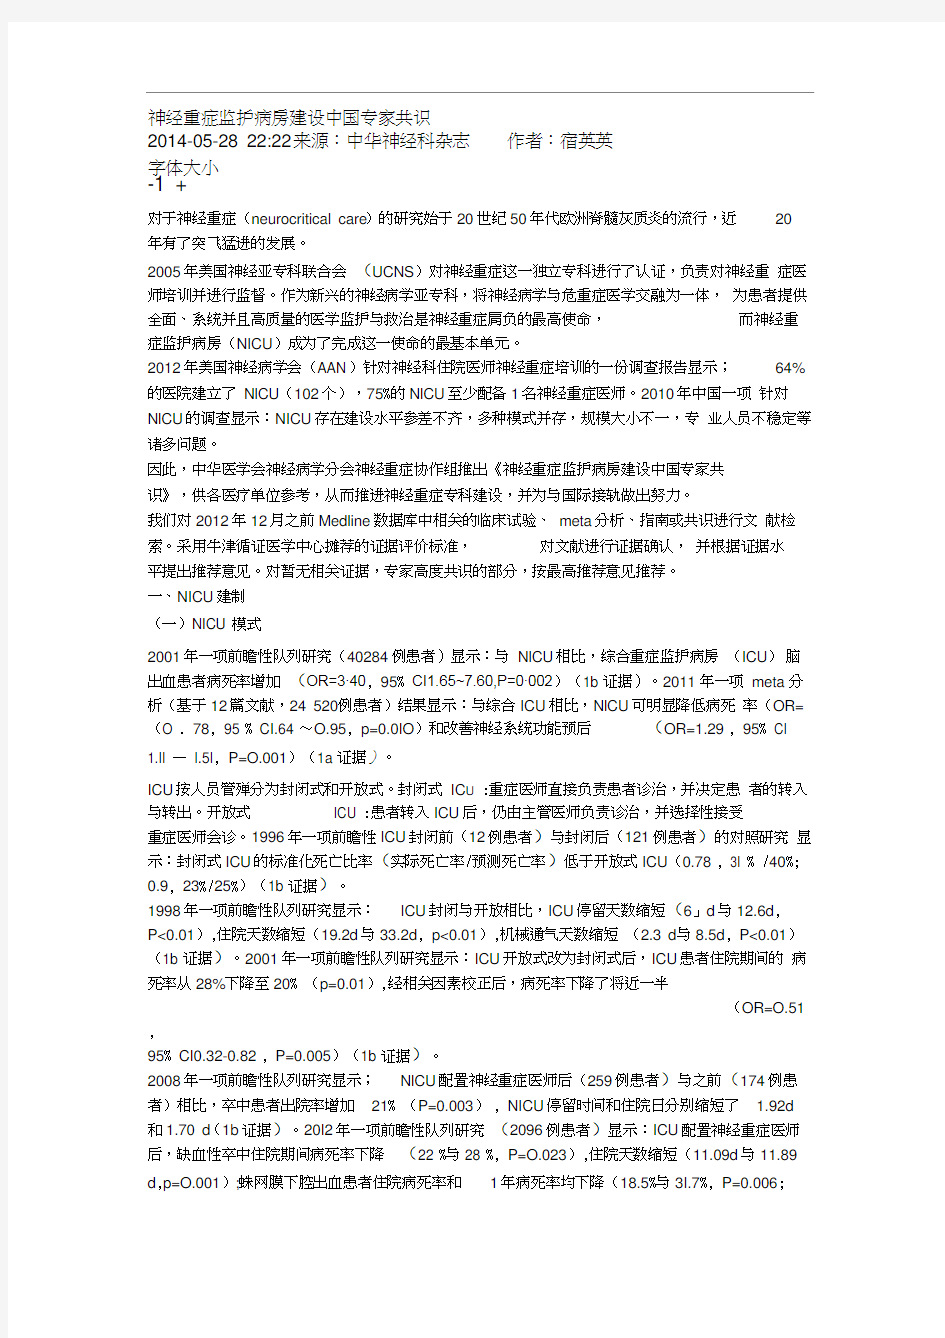 神经重症监护病房建设中国专家共识(4)